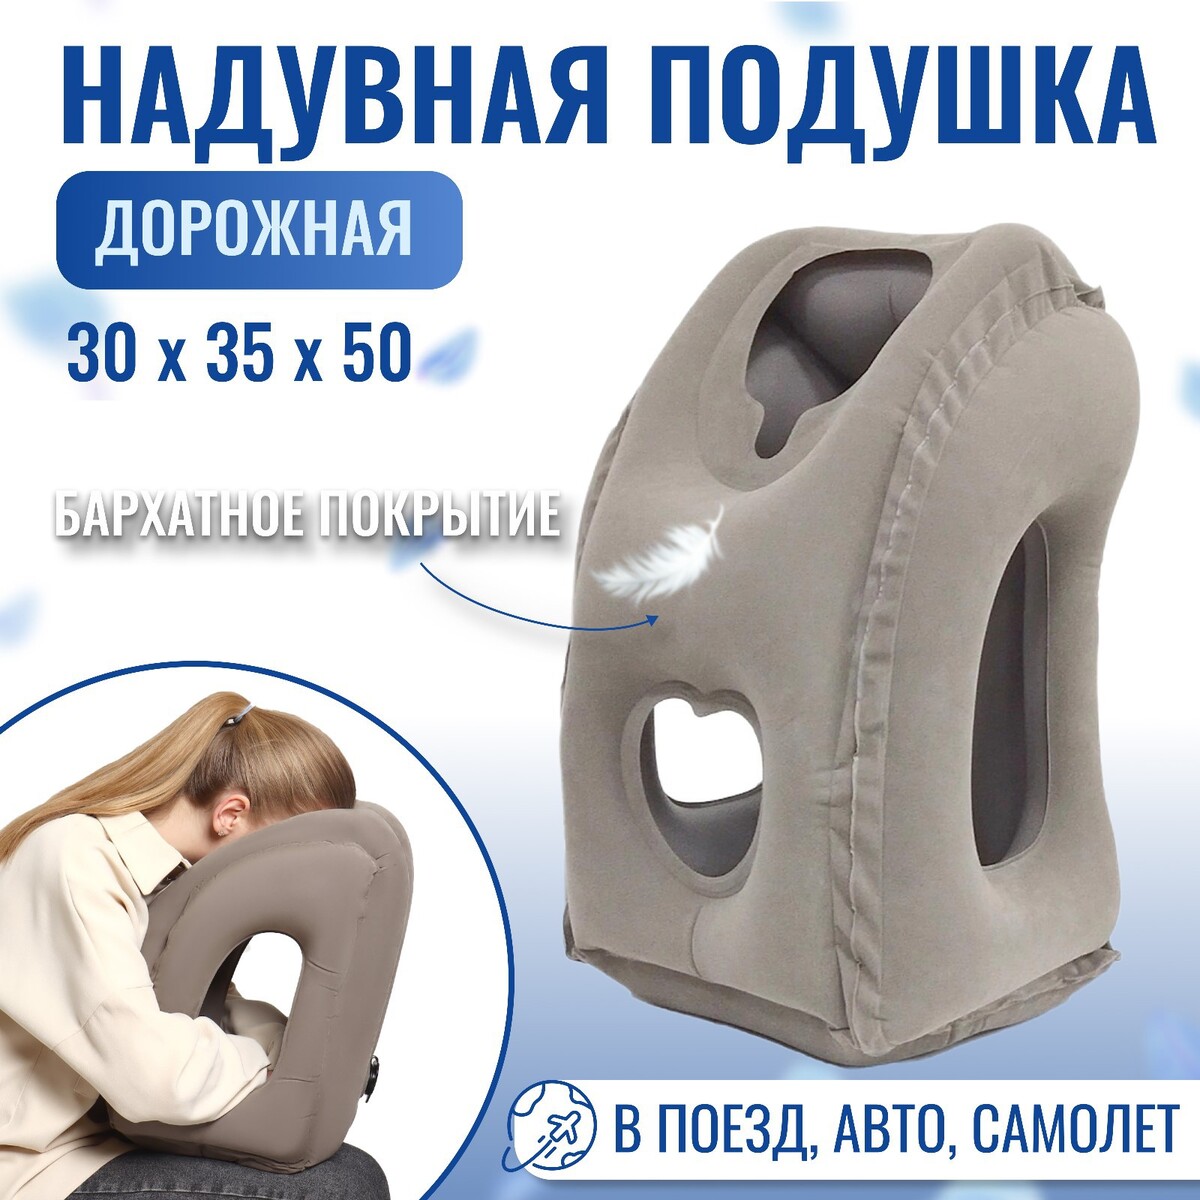 Подушка надувная, 50 × 35 × 30 см, в чехле, цвет серый подушка для шеи дорожная надувная с насосом 47 × 27 см пакет микс